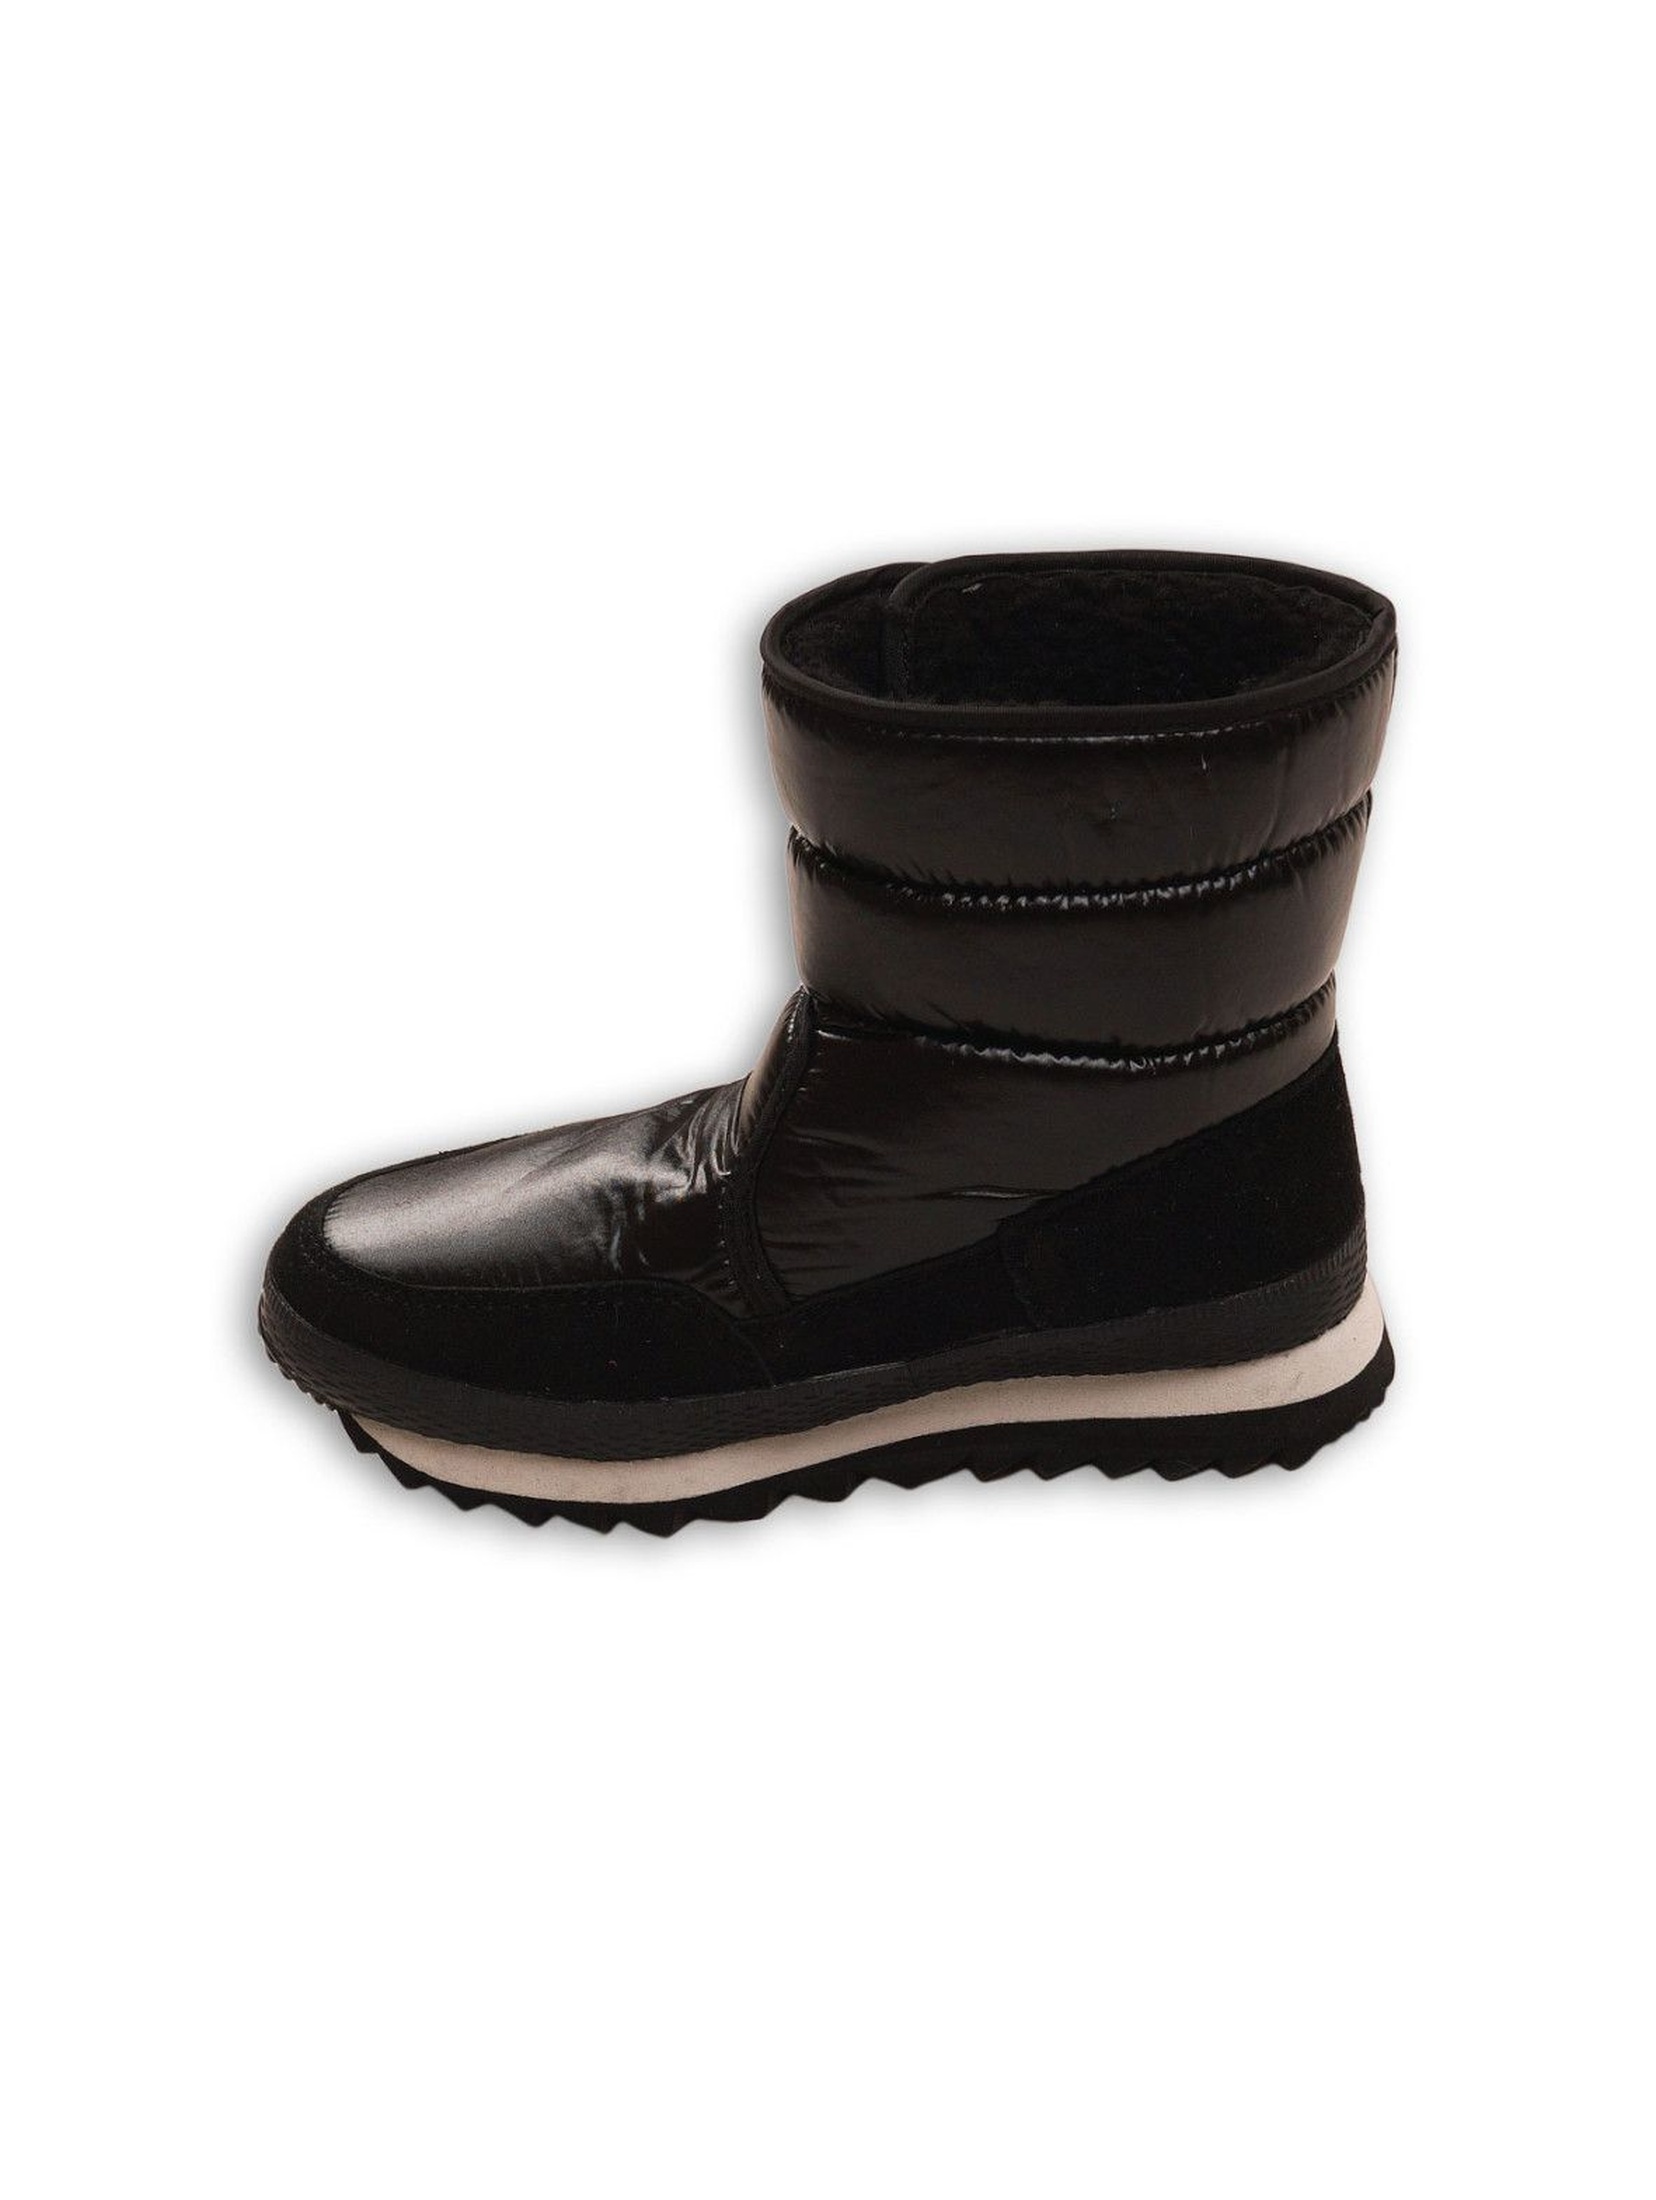 Buty zimowe dziewczęce-czarne zapinane na rzep rozm 34